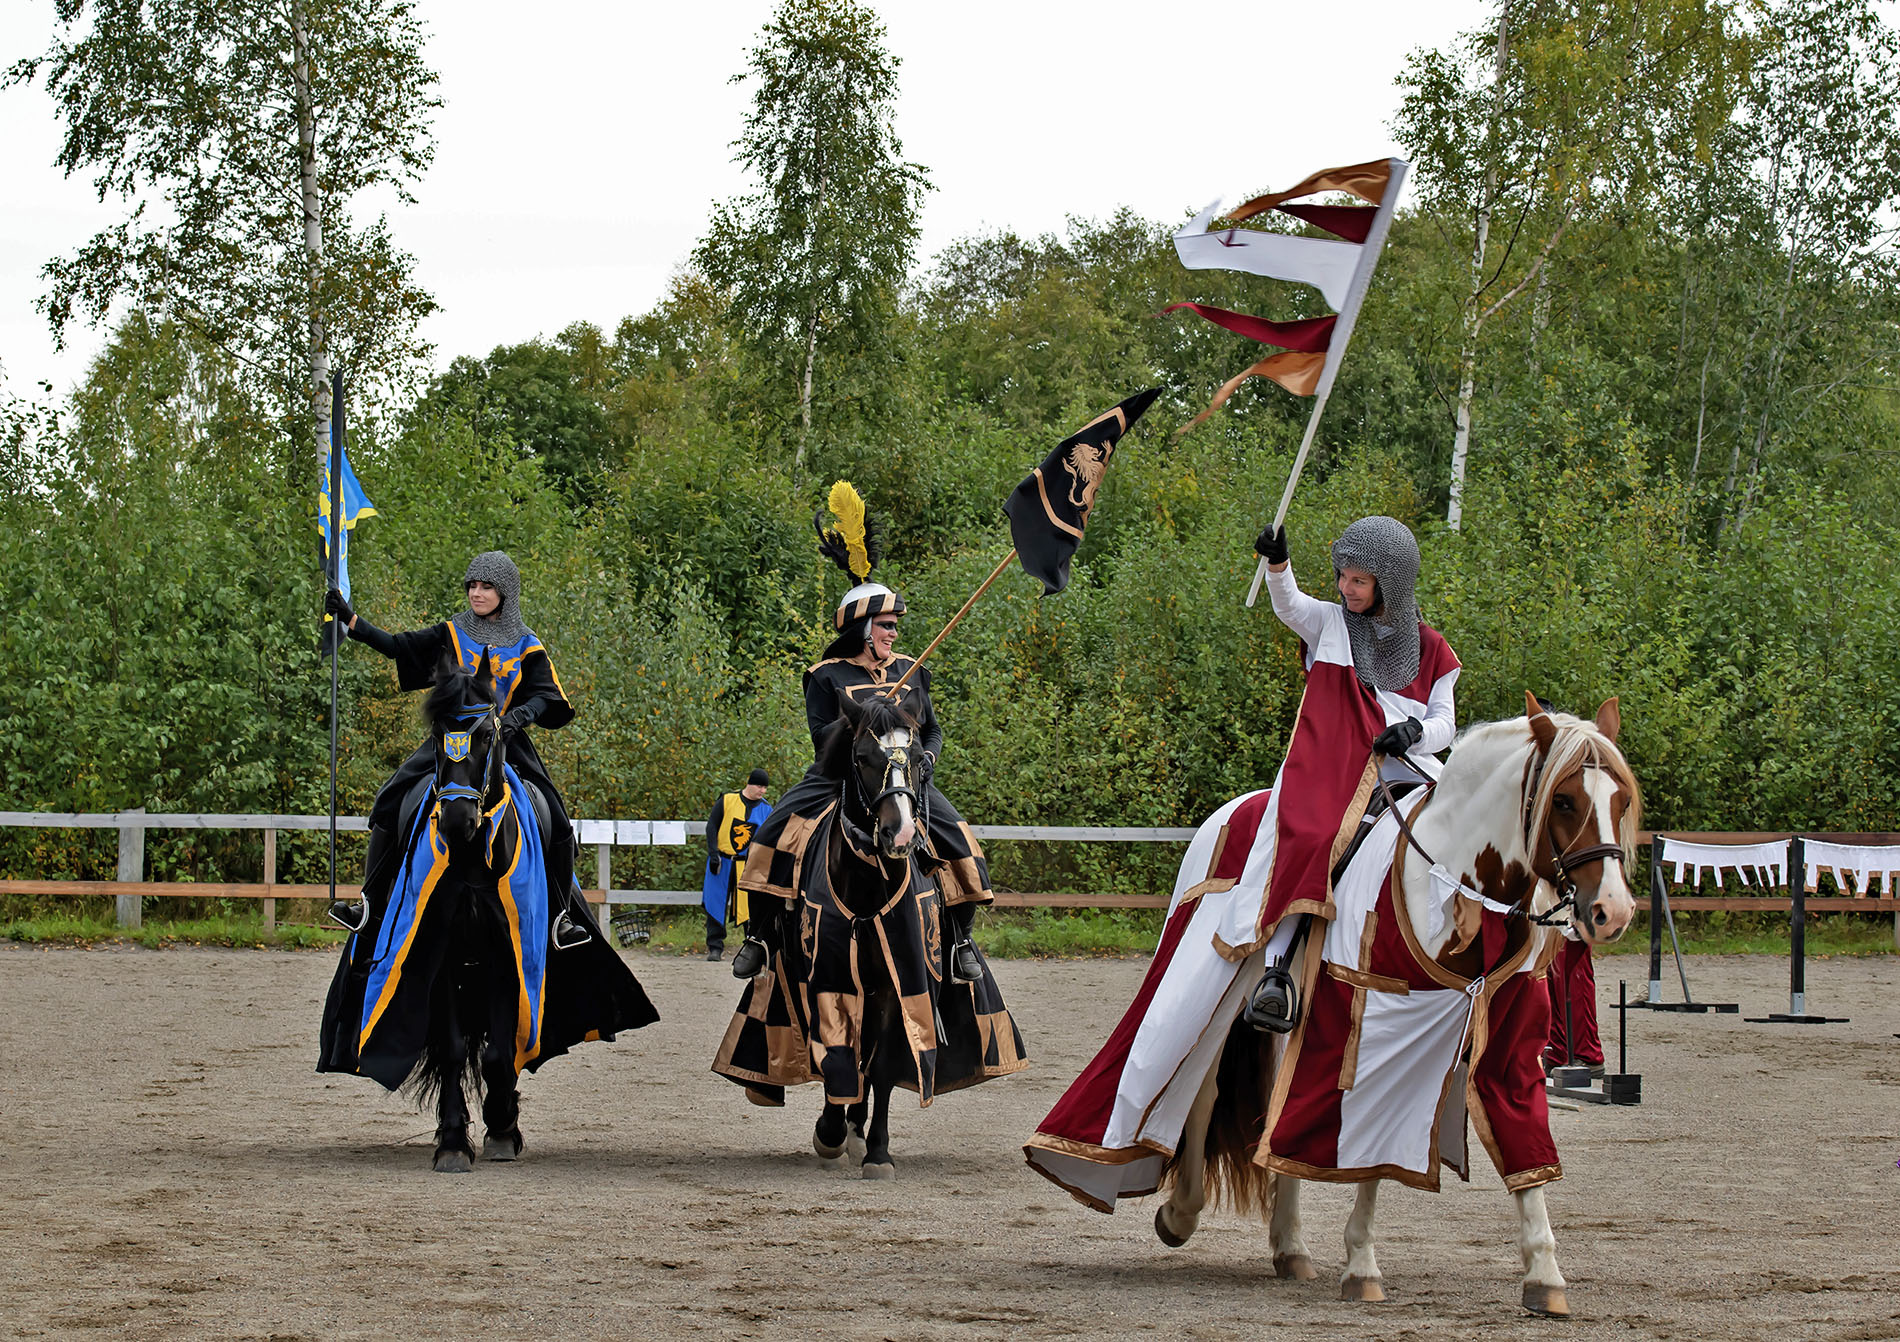 Tre personer utklädda till riddare rider på hästar i ett tornerspel. 